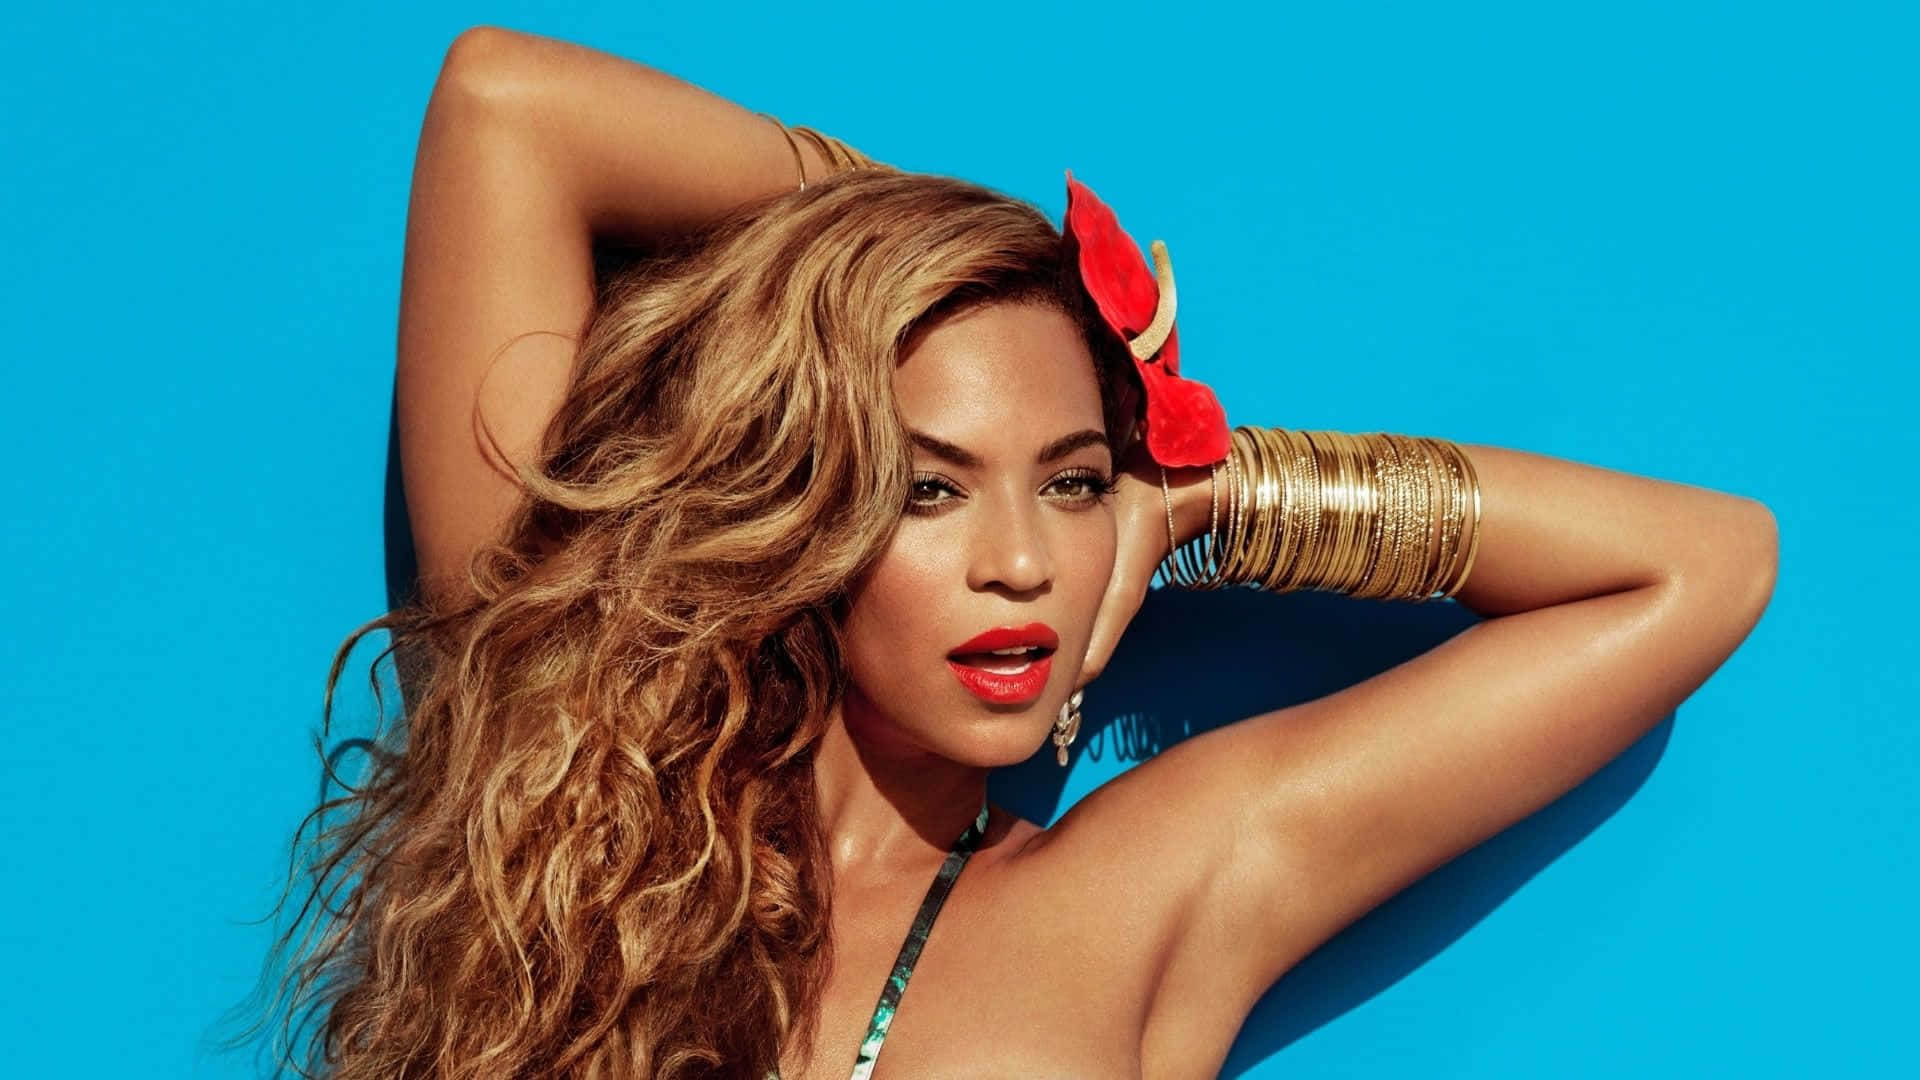 Beyoncéappare Spettacolare Nel Suo Iconico Vestito Giallo Avvolgente.